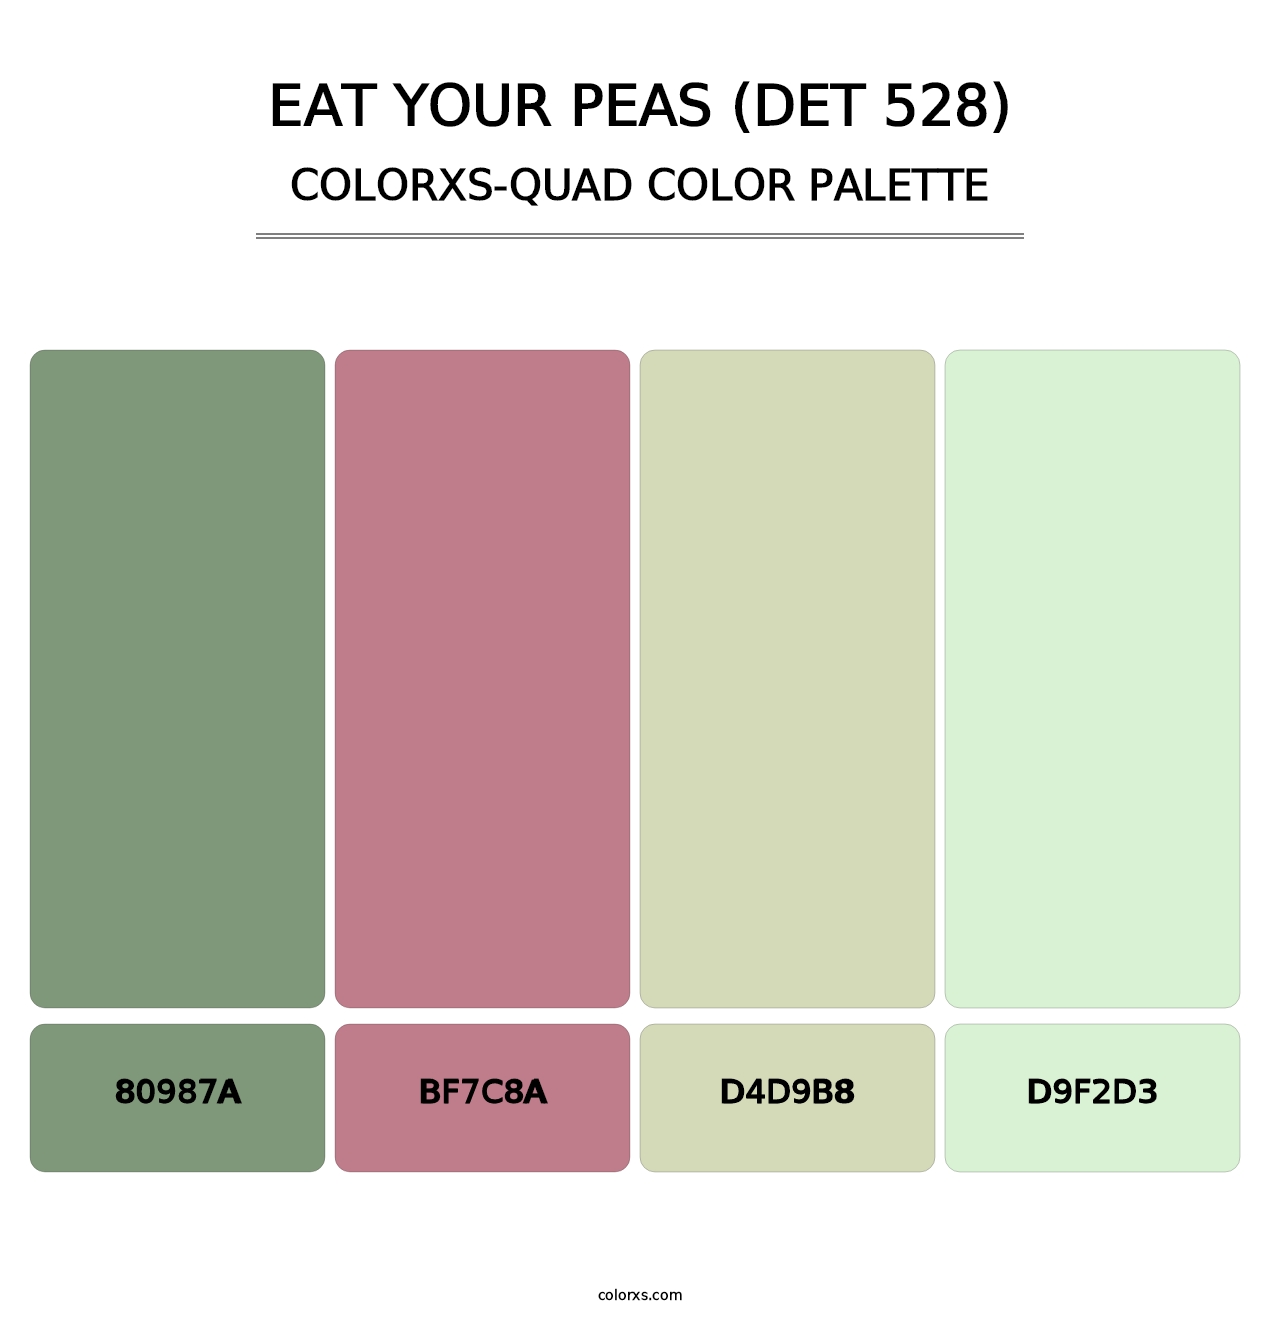 Eat Your Peas (DET 528) - Colorxs Quad Palette